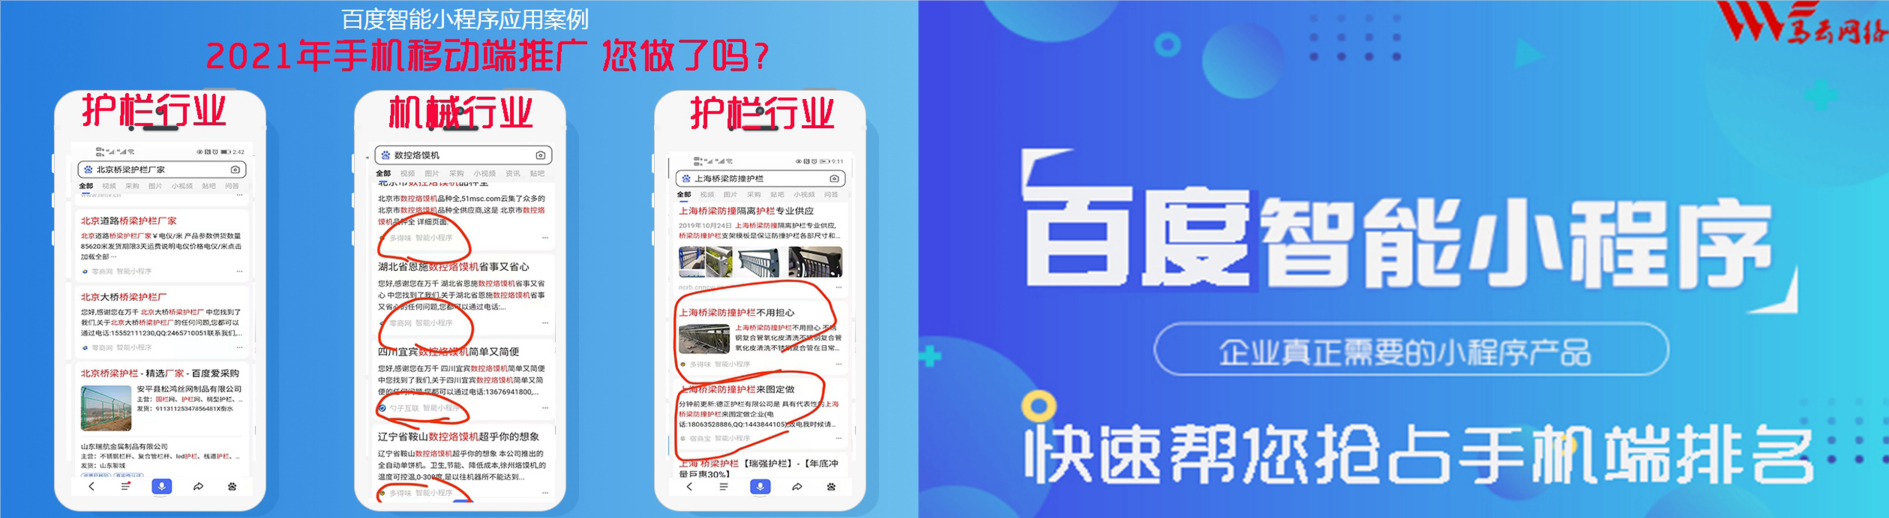 b2b平台销售、南京本地b2b平台销售、南京、南京b2b平台销售